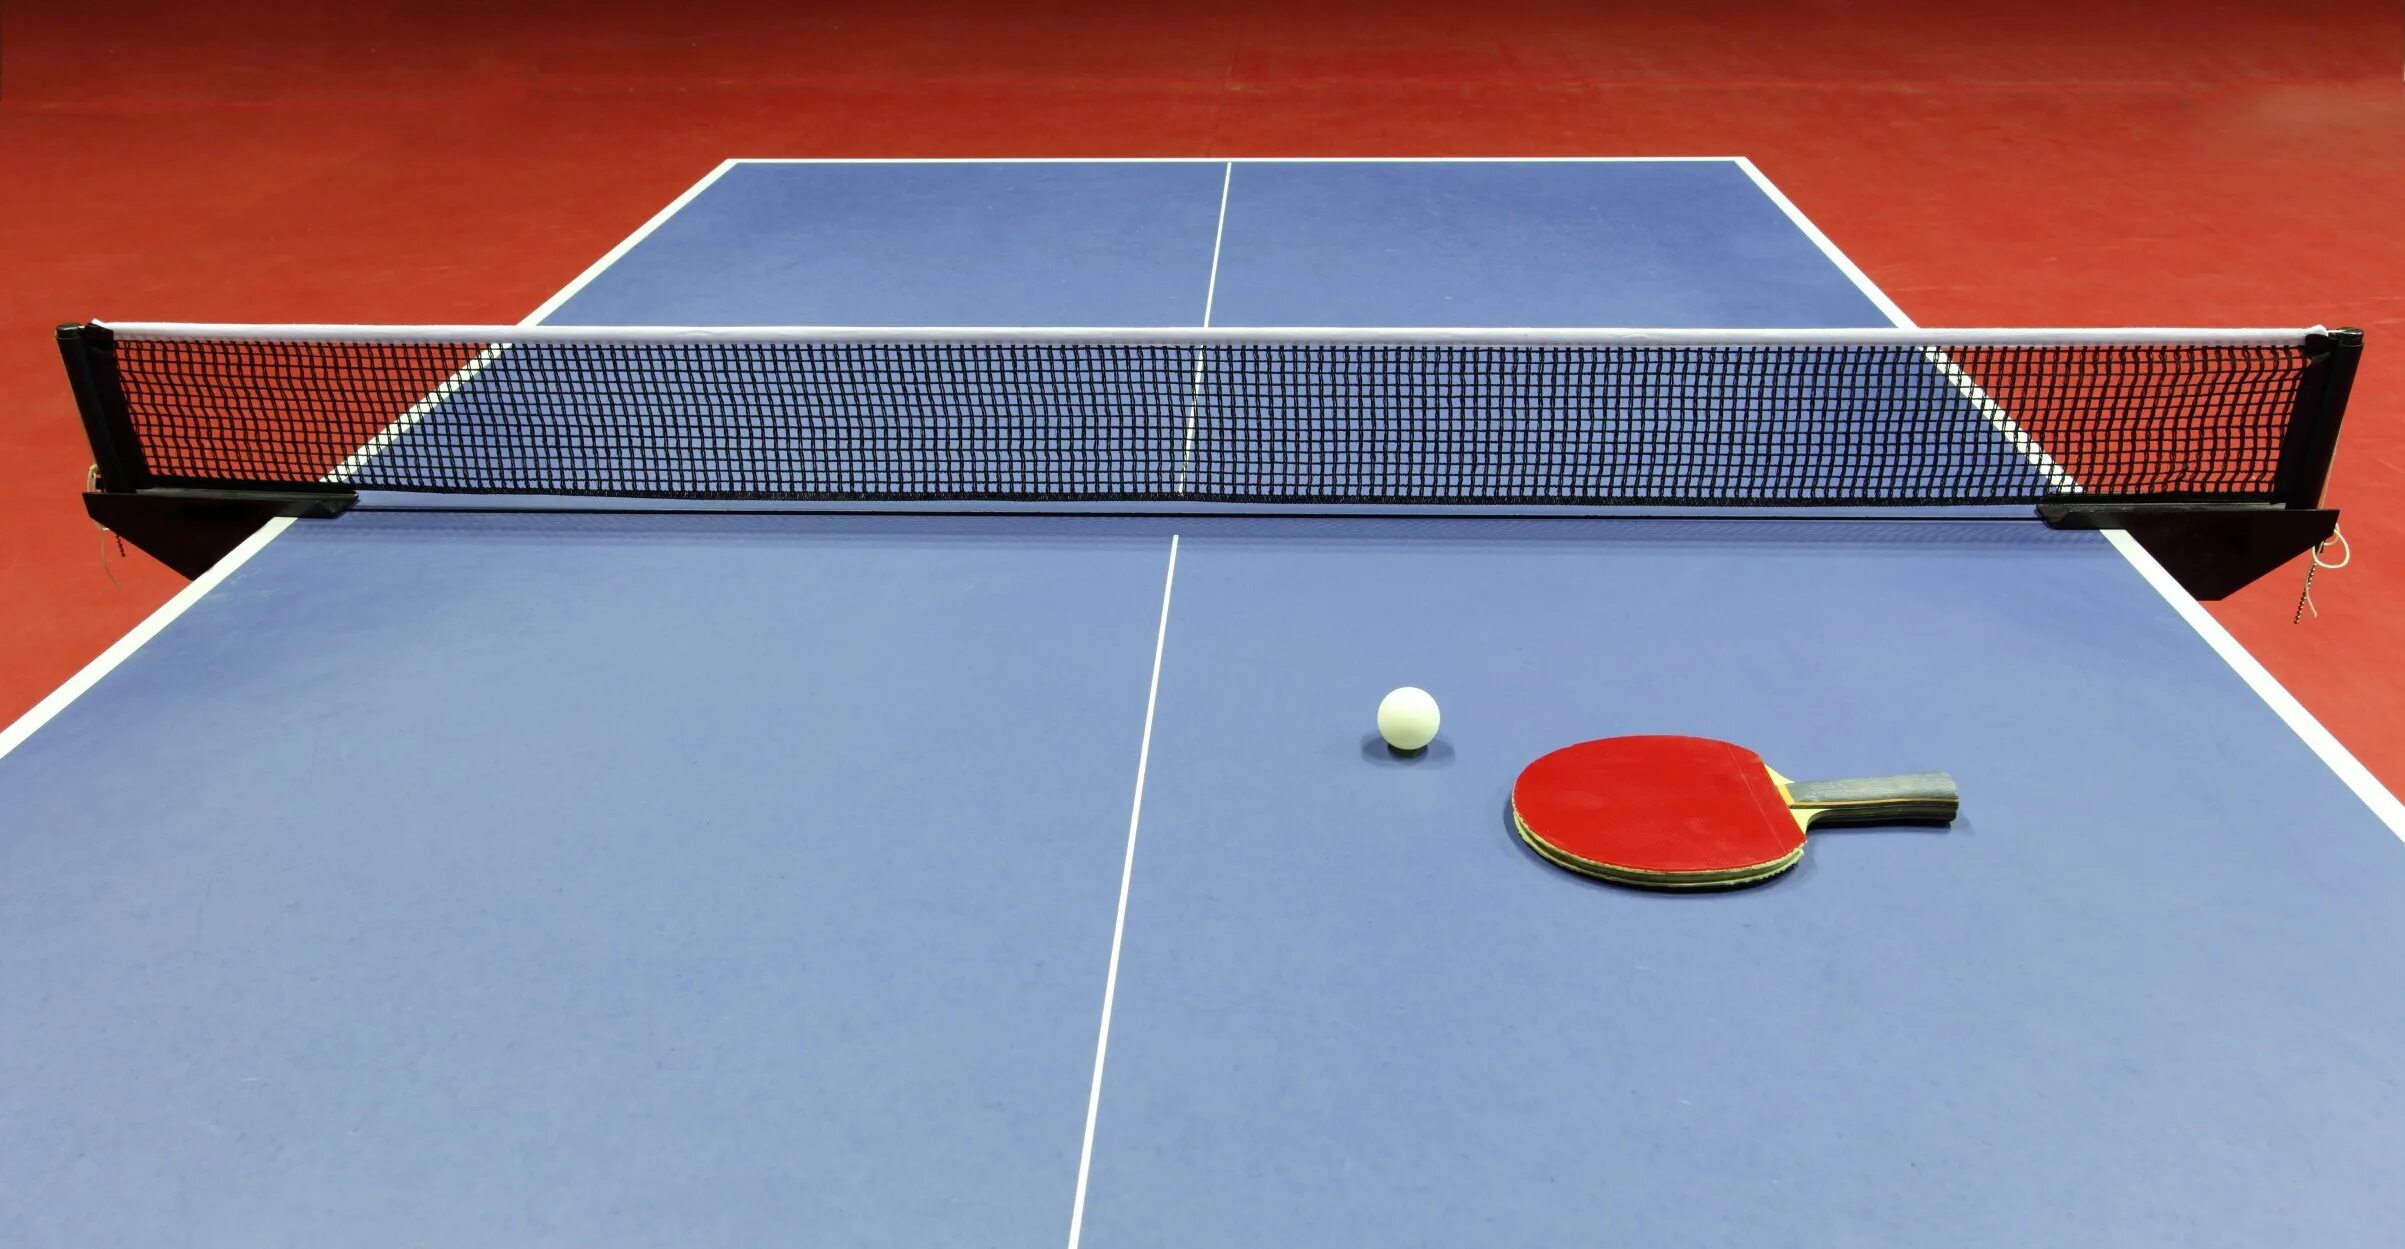 Настольный теннис (стол т1223). Stol Tennis” “Ping-Pong”. Пинпонг и настольный теннис. Теннисный стол пинг понг. Чем отличается настольный теннис от пинг понга